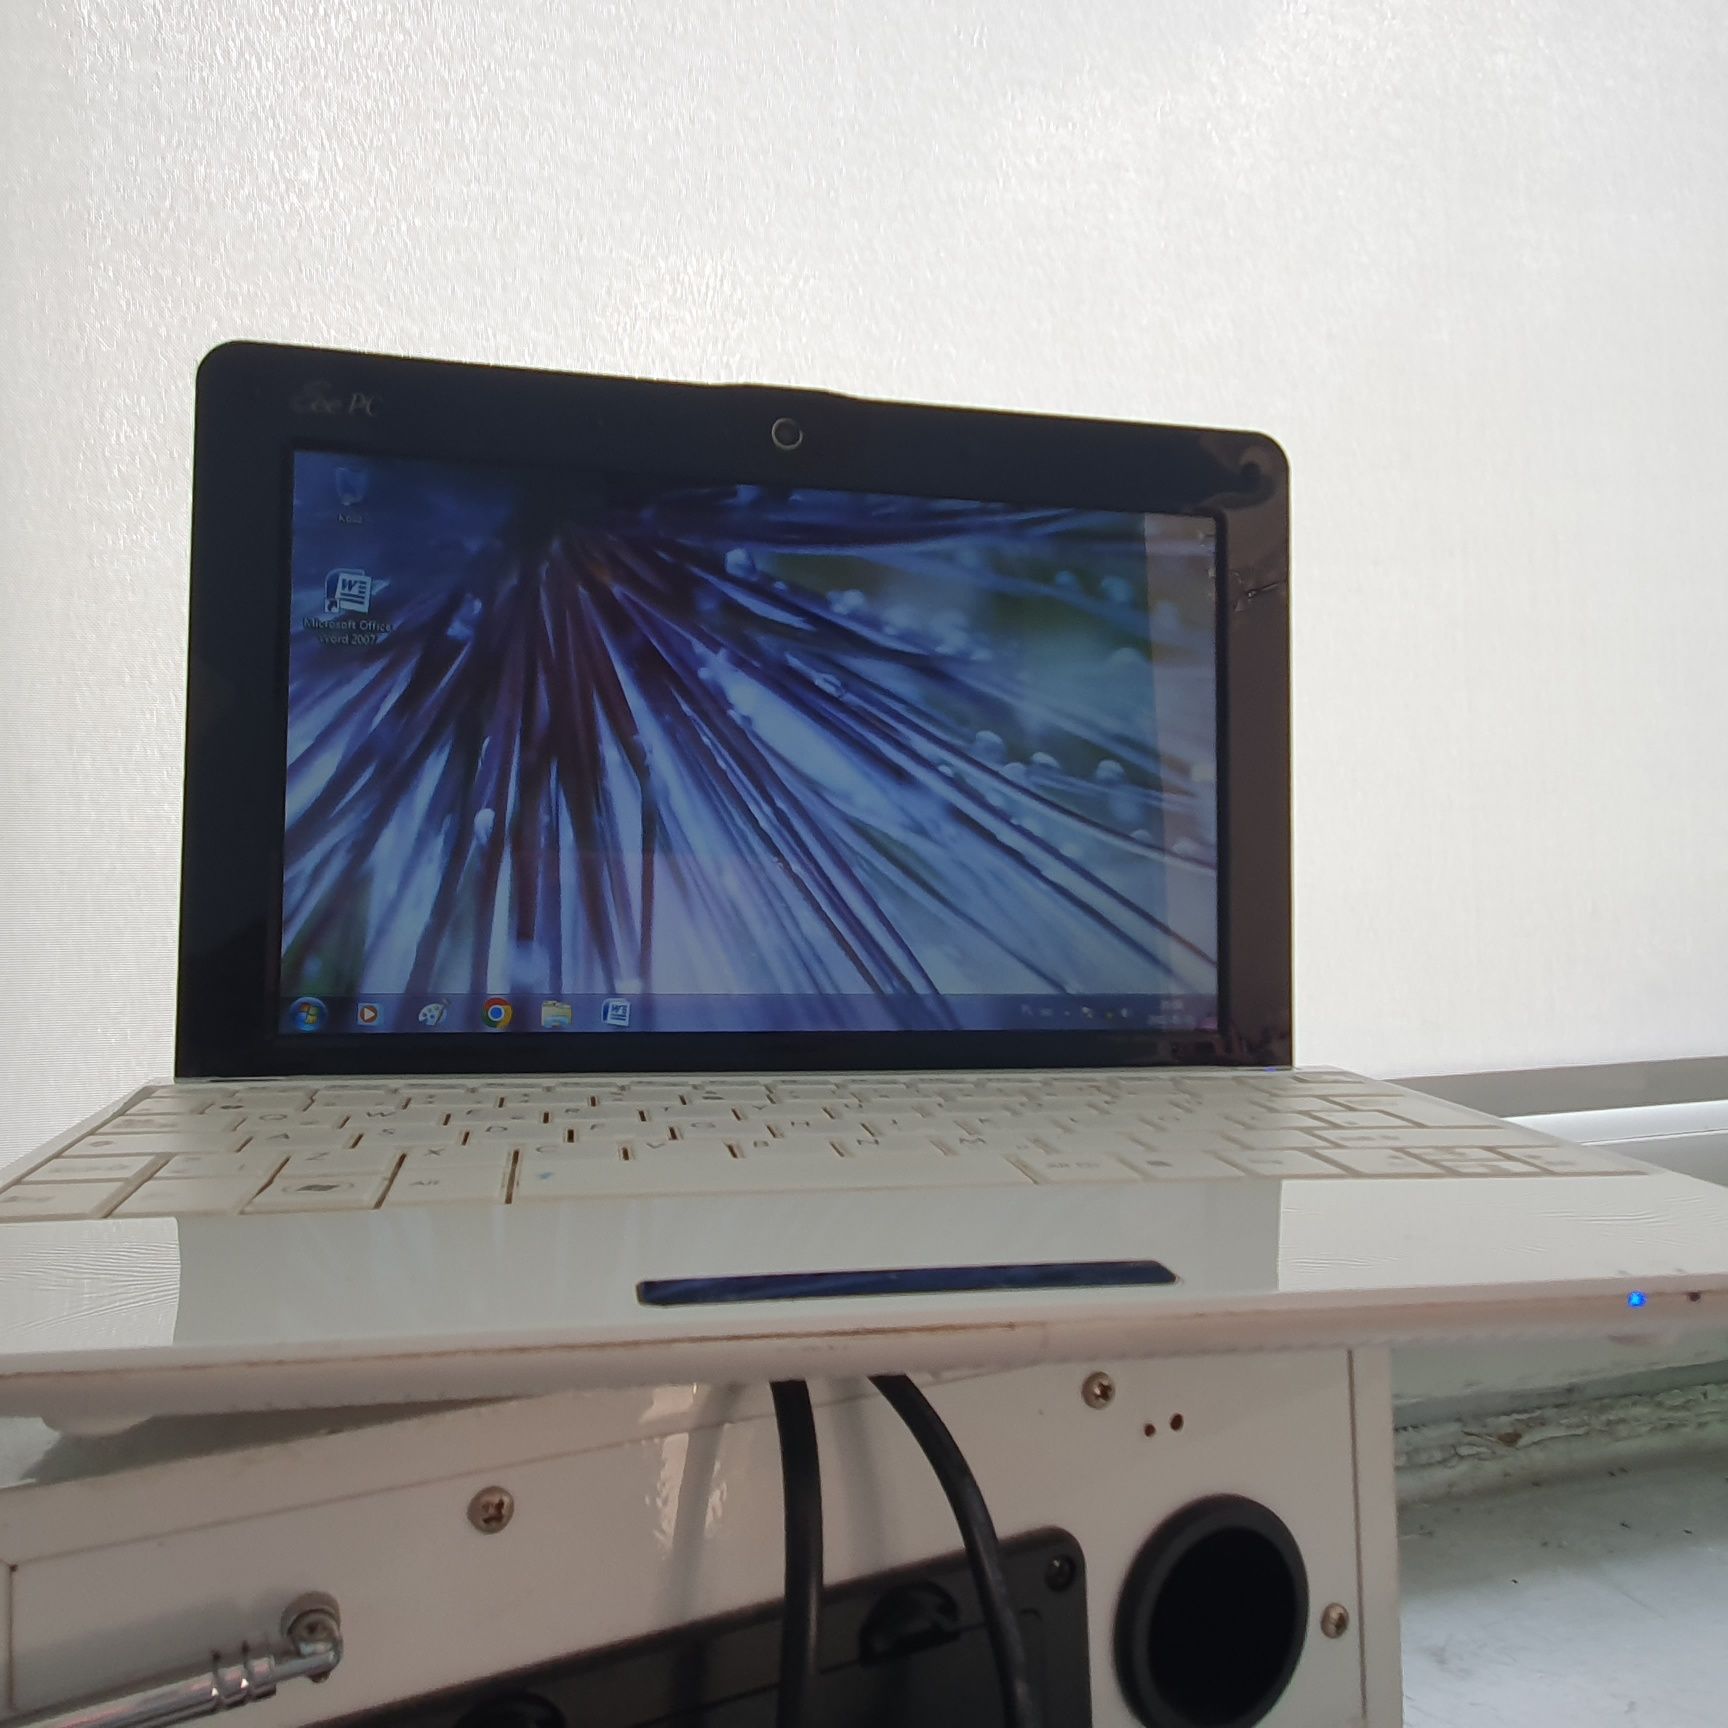 Laptop Asus Eee PC